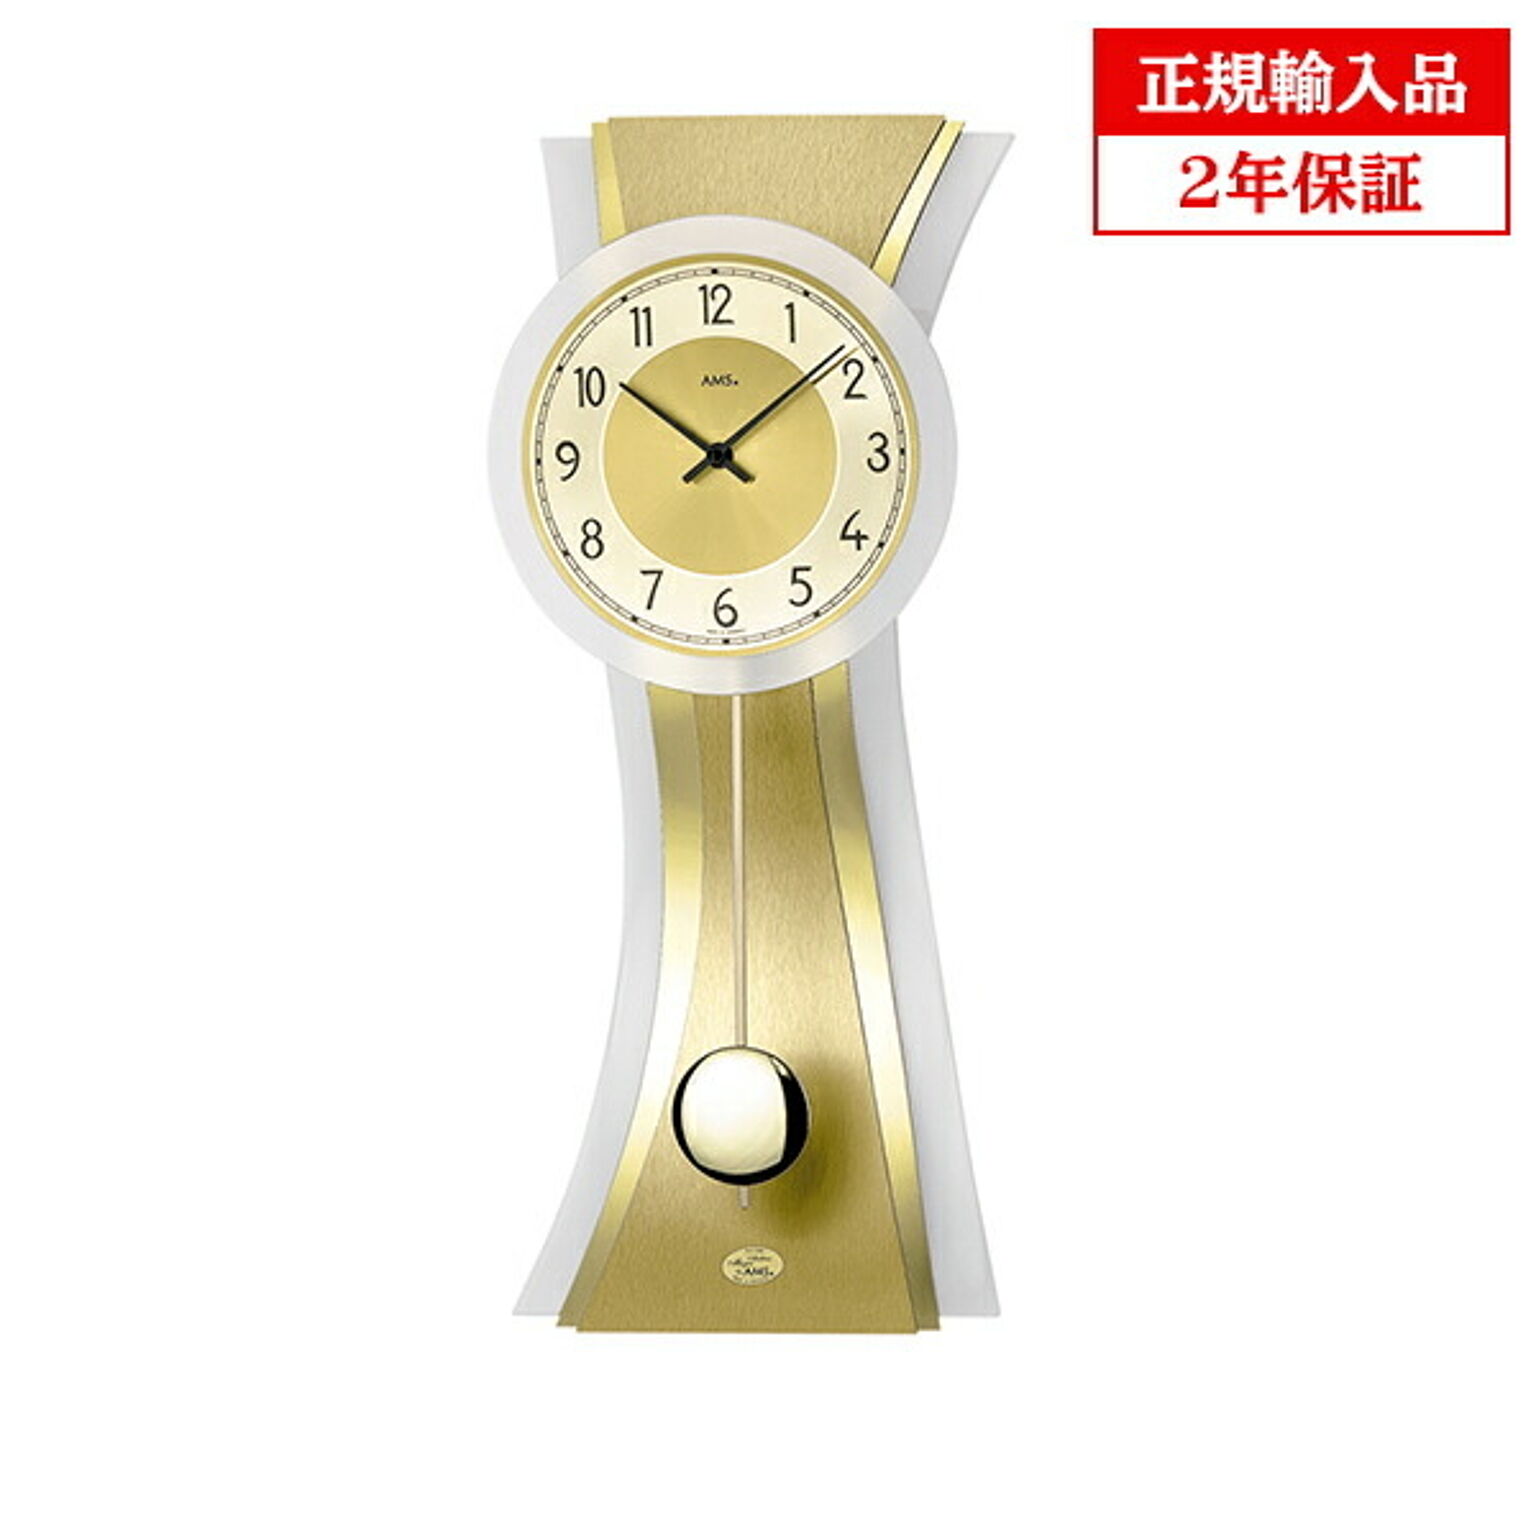 アームス社 AMS 7267 クオーツ 掛け時計 (掛時計) 振り子つき ゴールド ドイツ製 【正規輸入品】【メーカー保証2年】